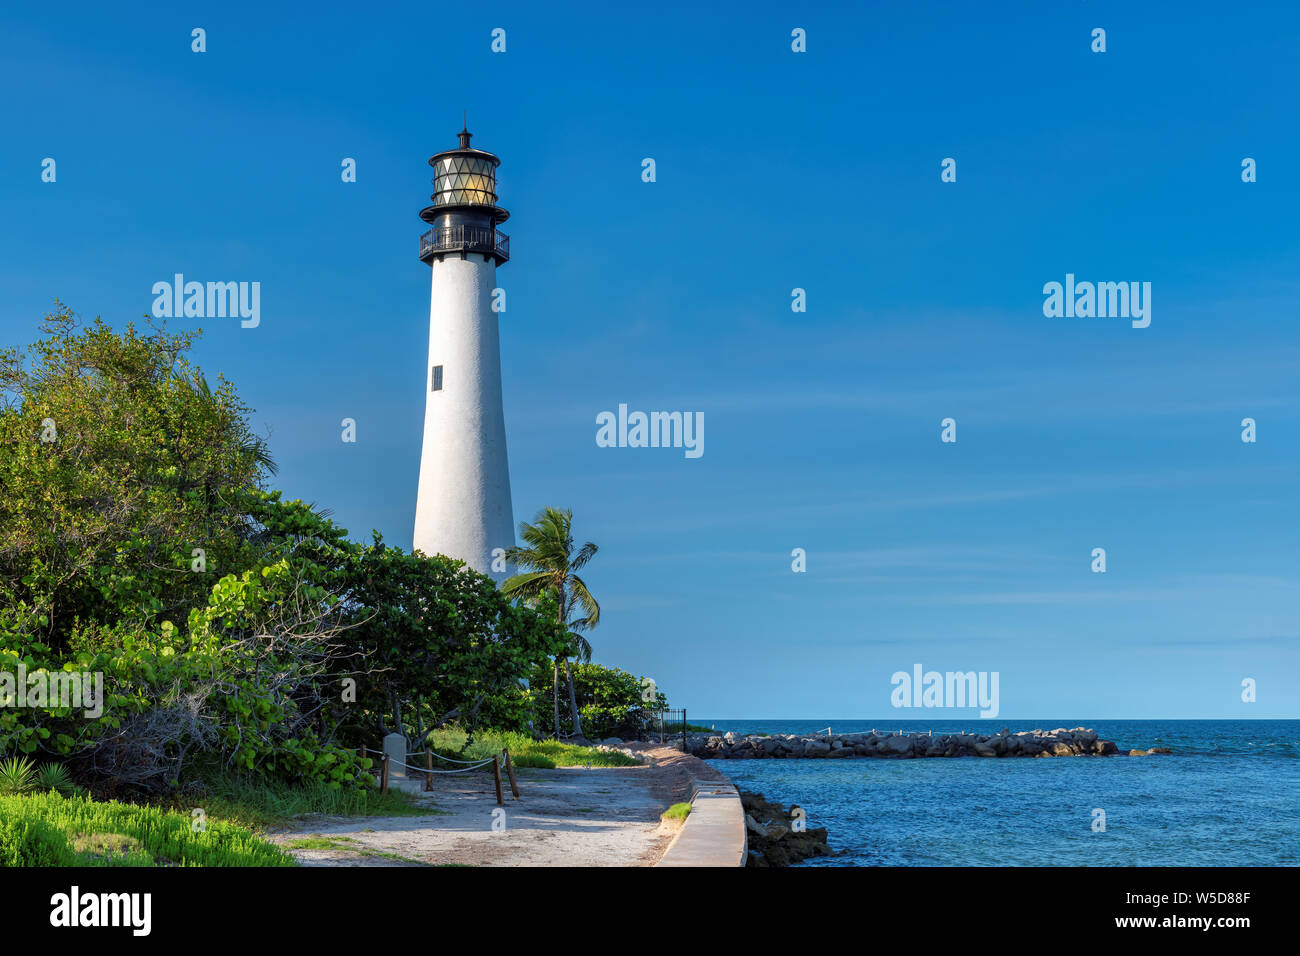 Le phare de Cape Florida sur la plage, Key Biscayne, Miami, Floride, USA Banque D'Images